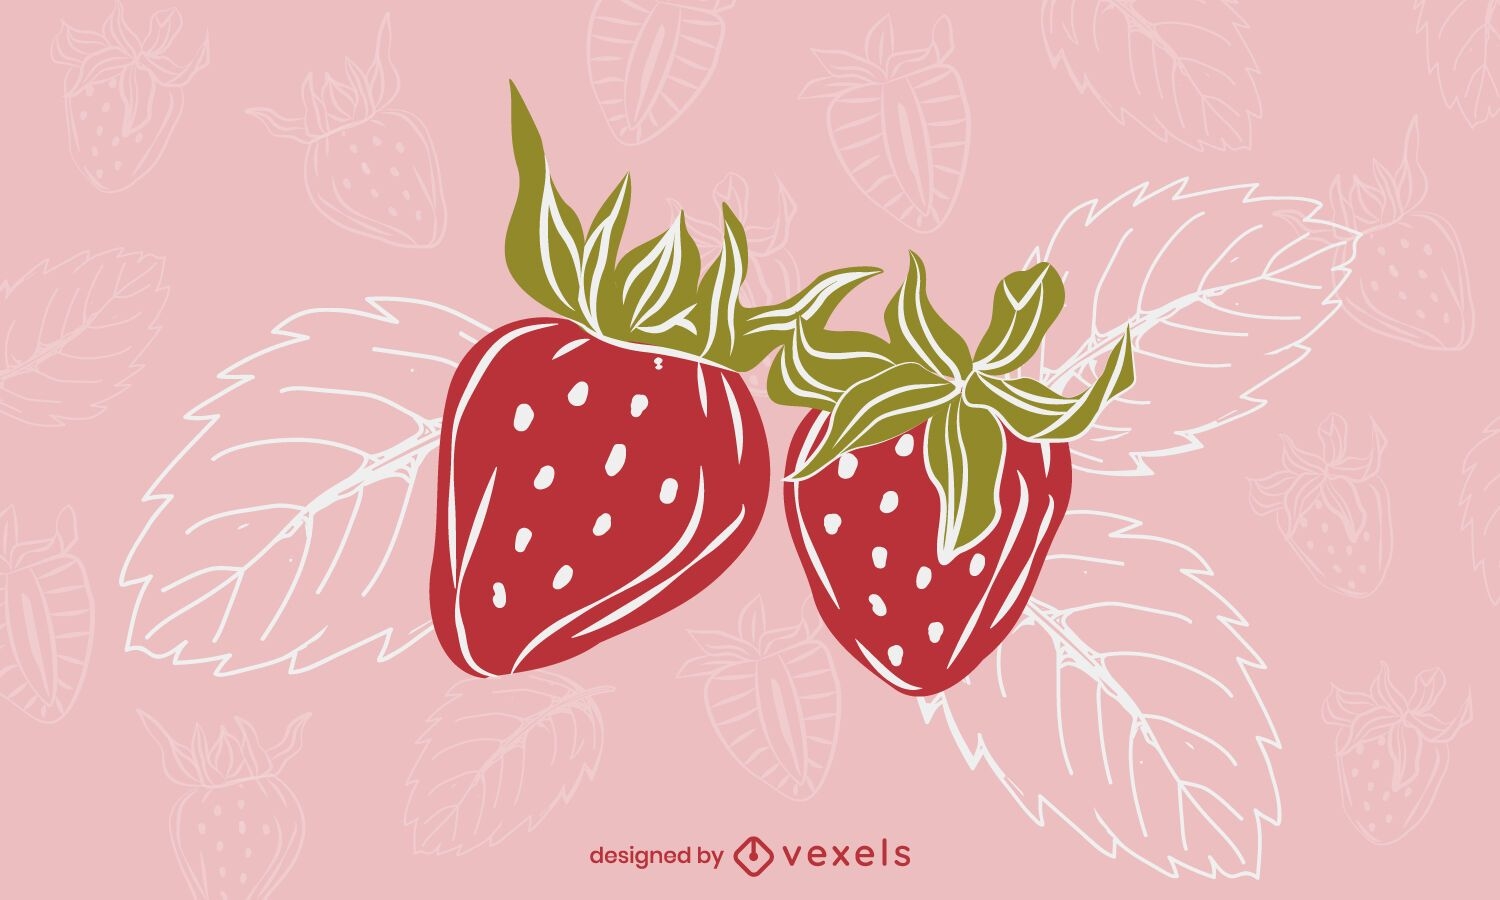 Erdbeer verl?sst Illustrationsdesign